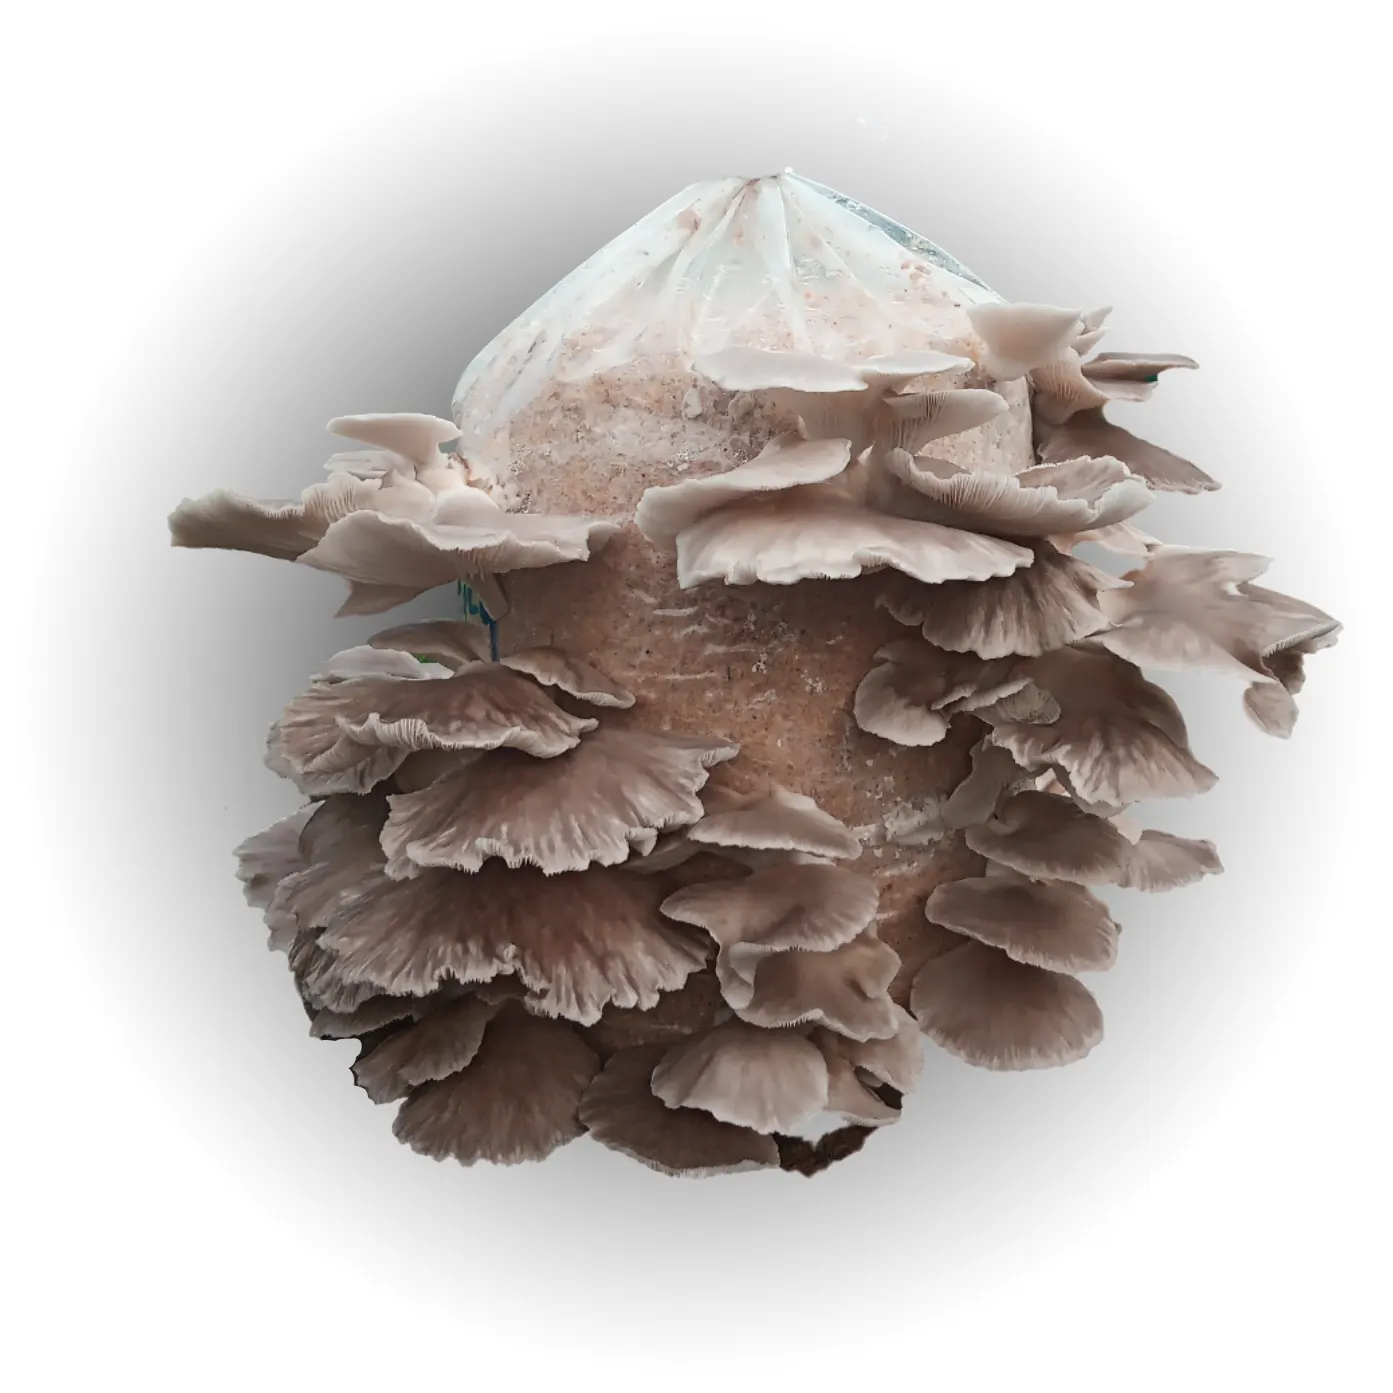 italian oyster mushroom